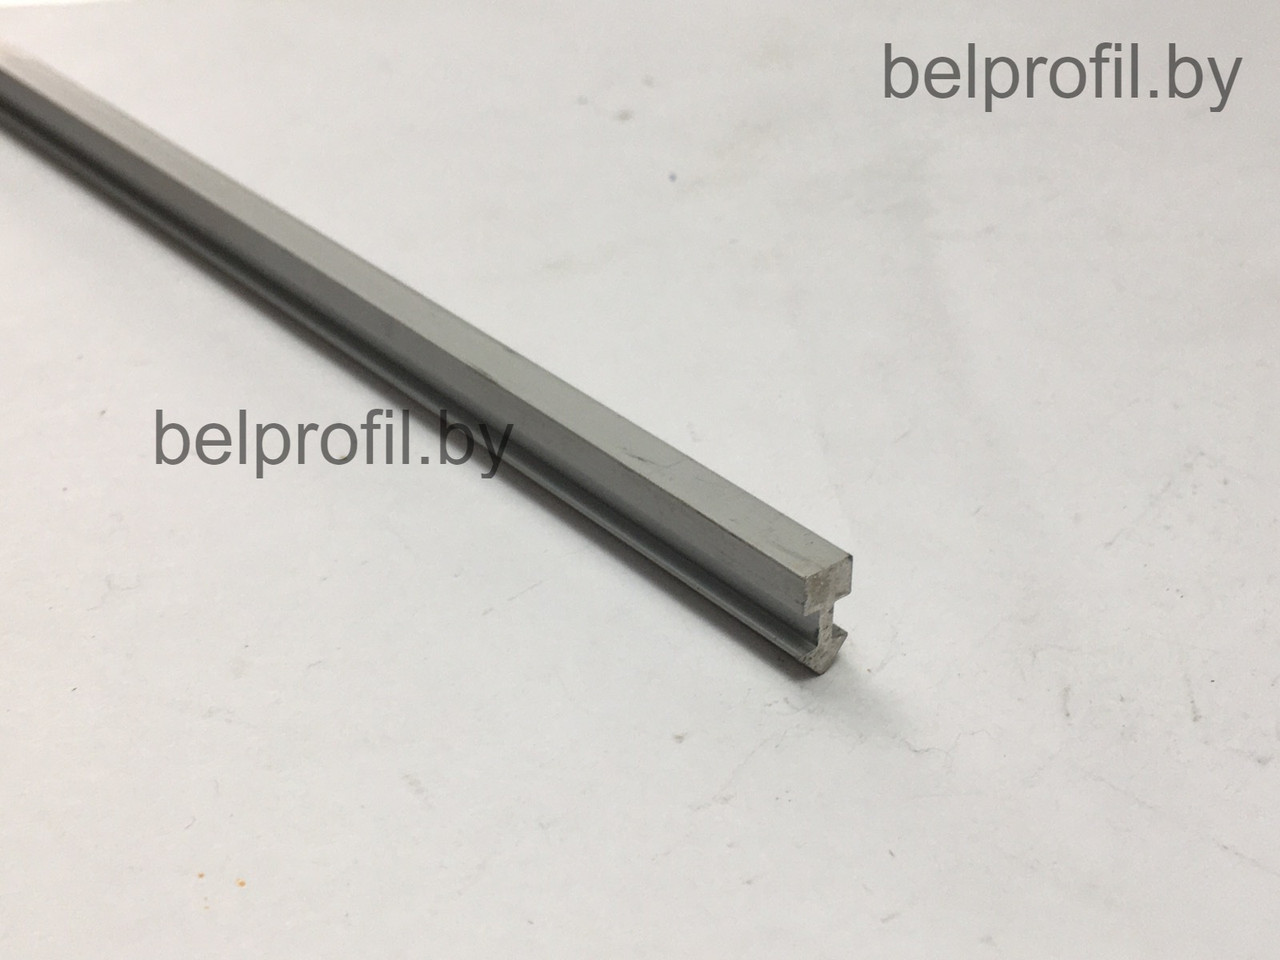 Алюминиевый Т-образный профиль 5 мм СЕРЕБРО МАТ 270 см, фото 1